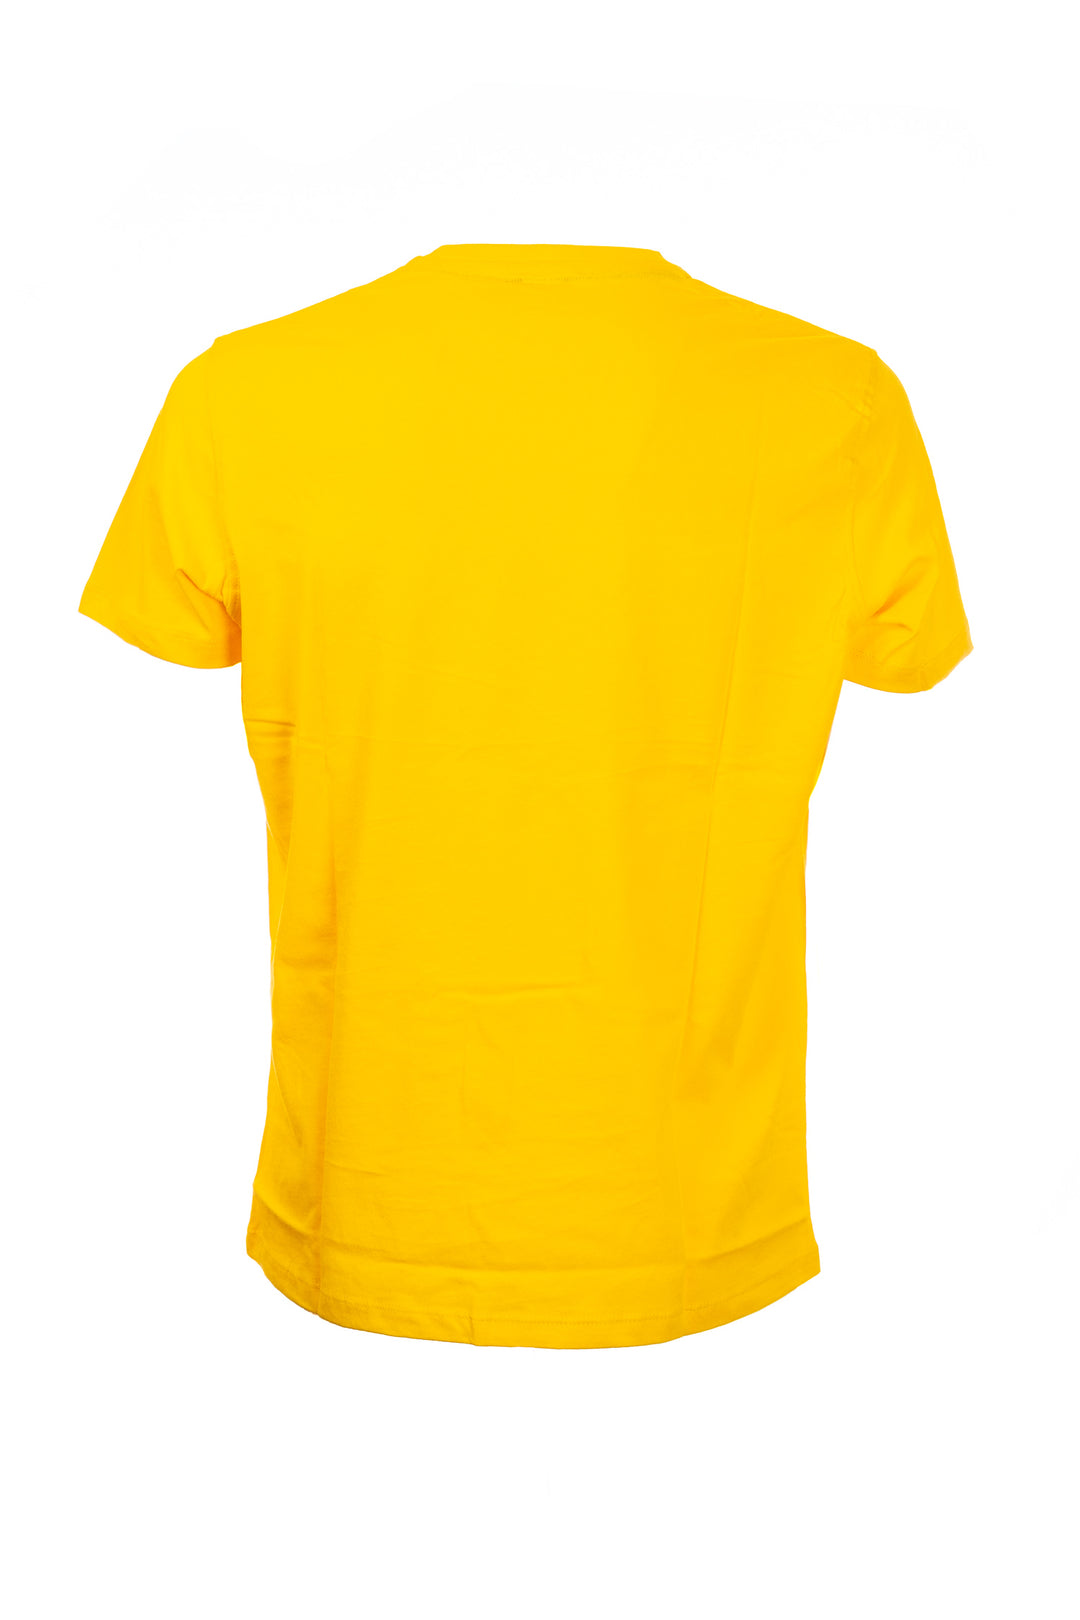 U.S. POLO ASSN. T-shirt gialla in cotone con logo ricamato sul petto - Mancinelli 1954